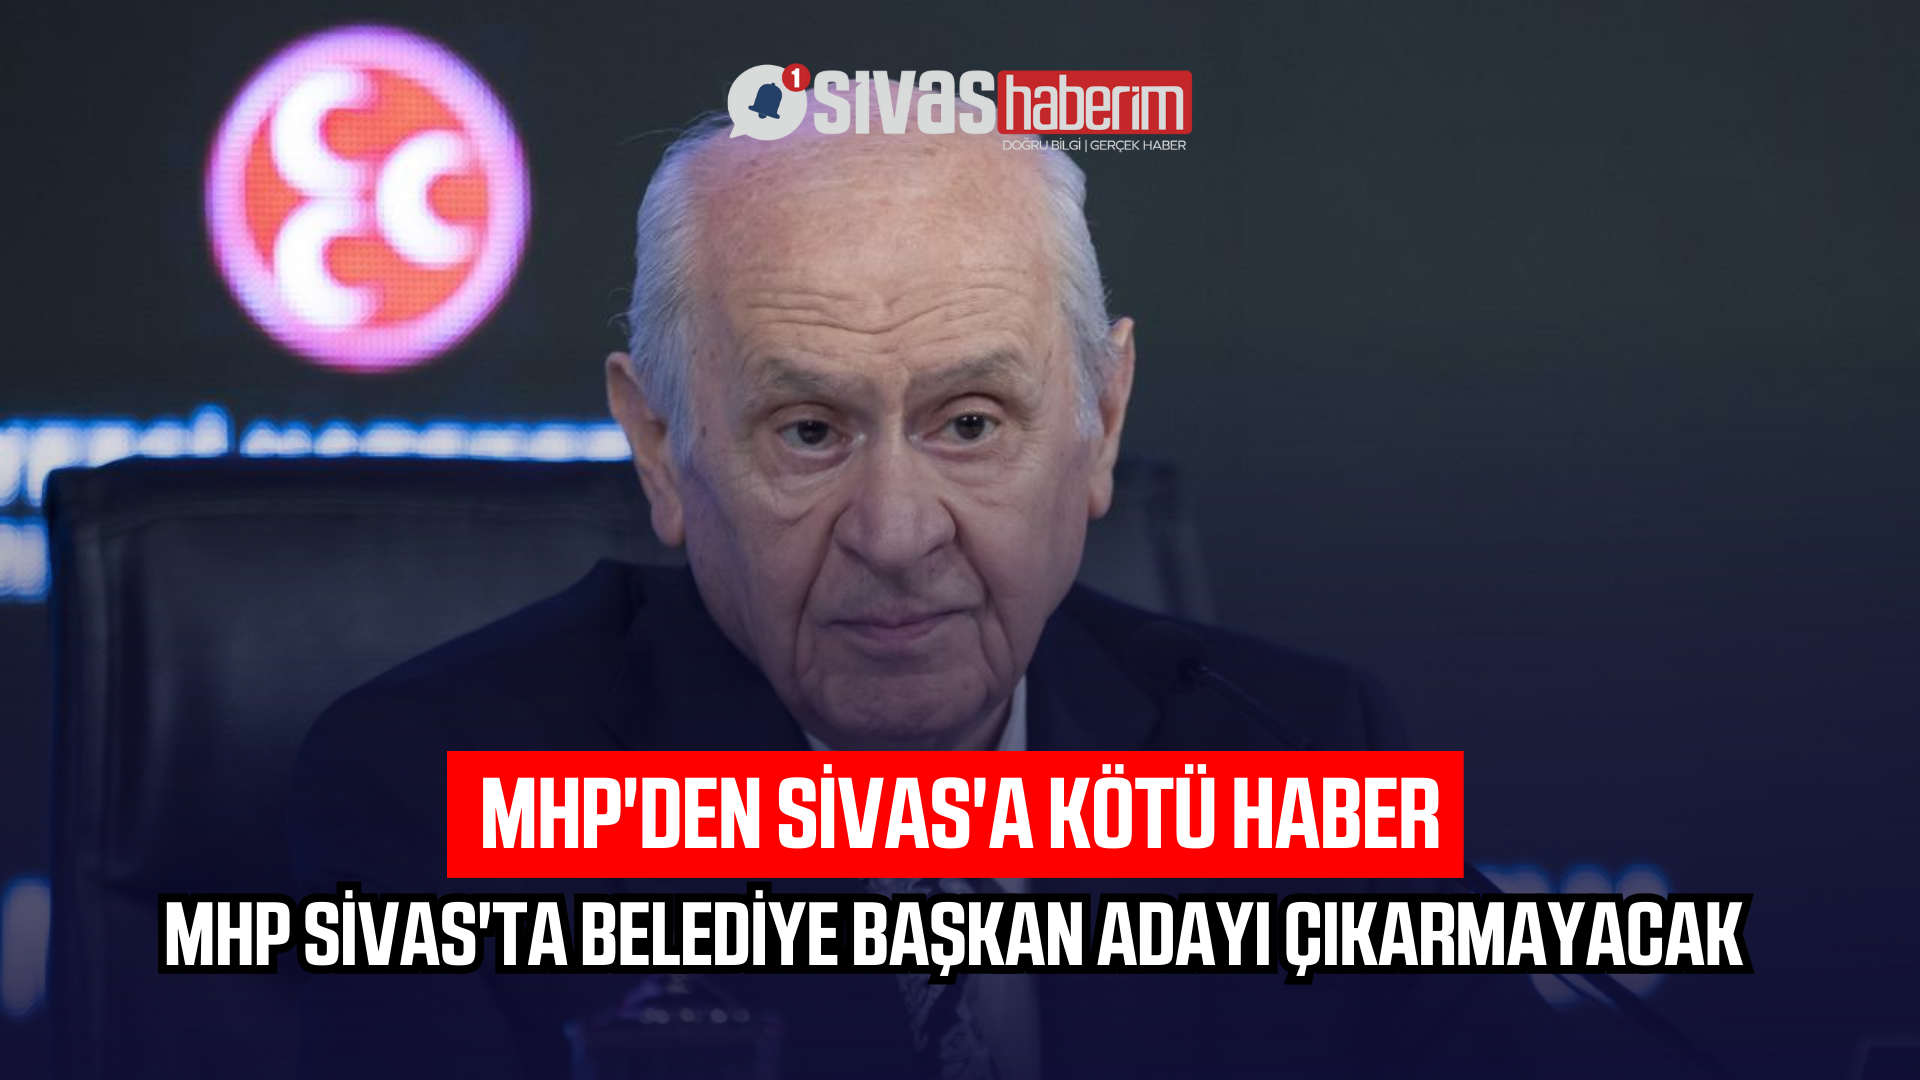 MHP Sivas’ta Belediye Başkan